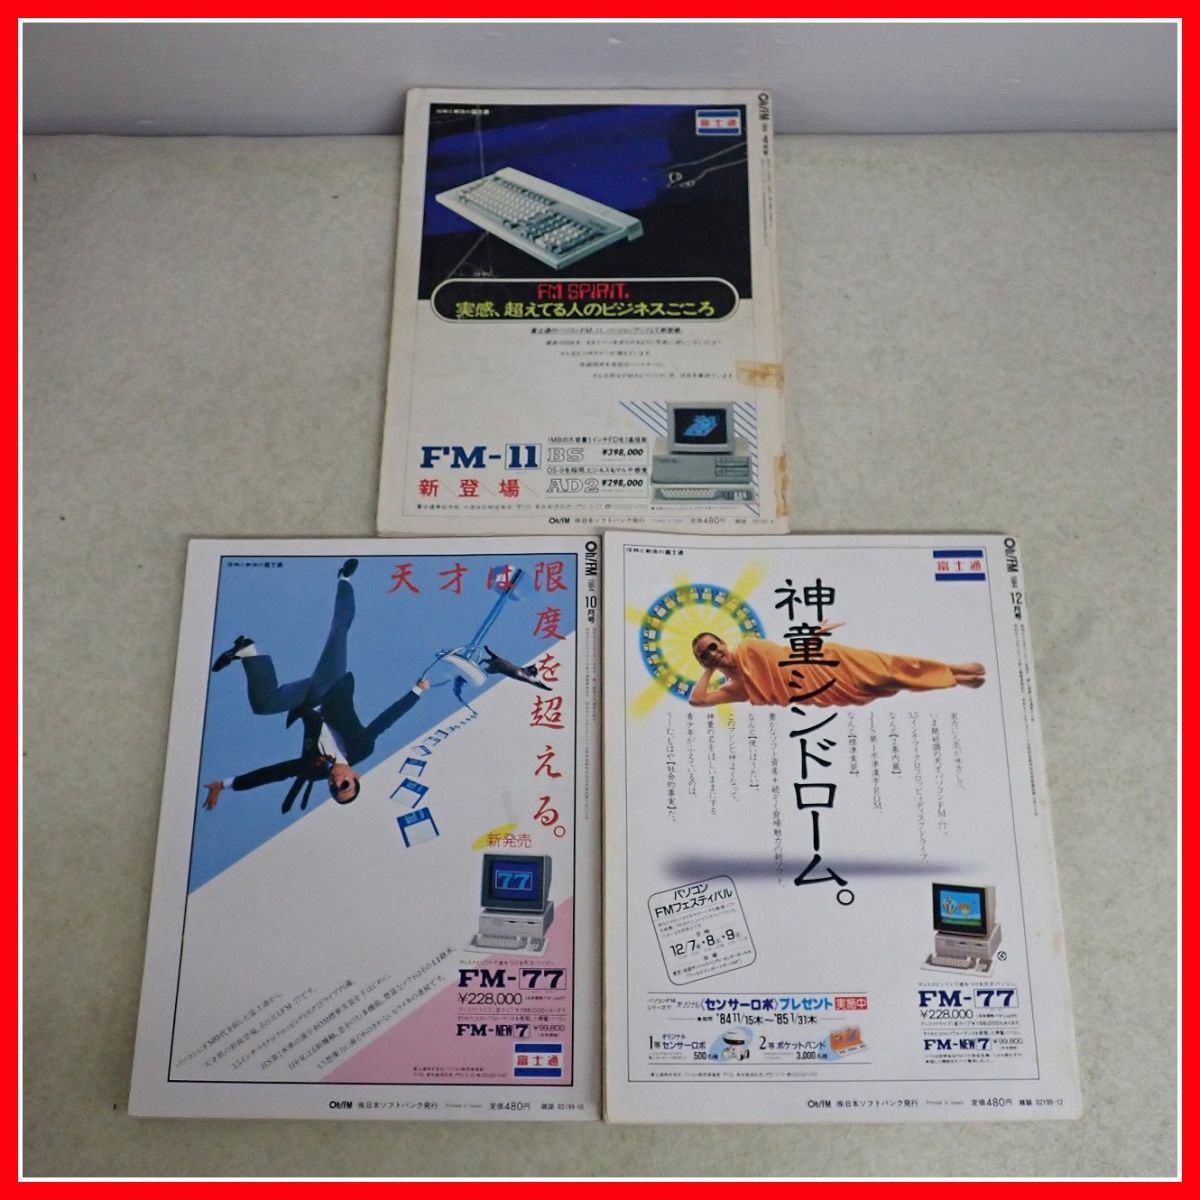 * журнал ежемесячный Oh!FM/o-!ef M 1984~89 год продажа минут совместно 9 шт. комплект Fujitsu FM-7 компьютер относящийся [20